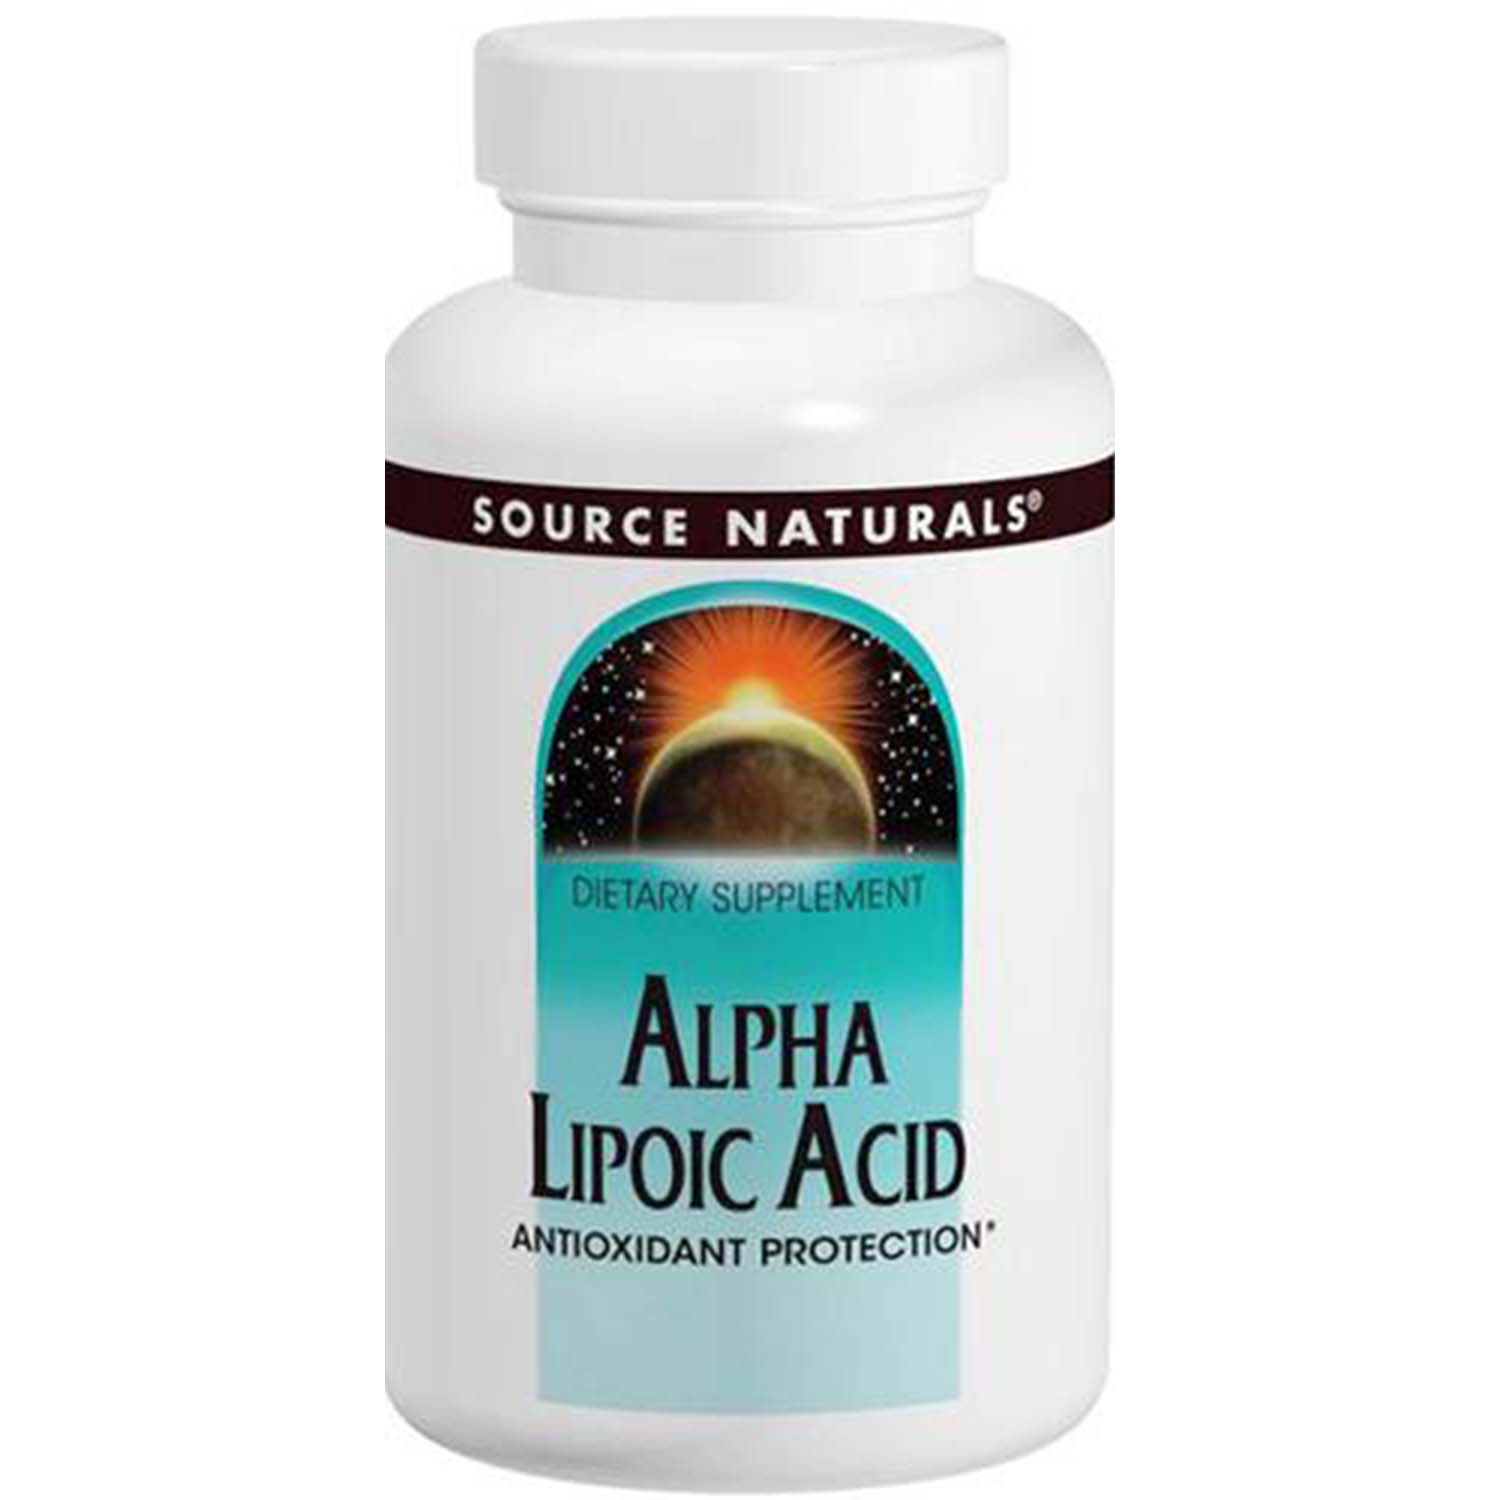 Source Naturals Alpha Lipoic Acid, 100 mg, 60 Tablets